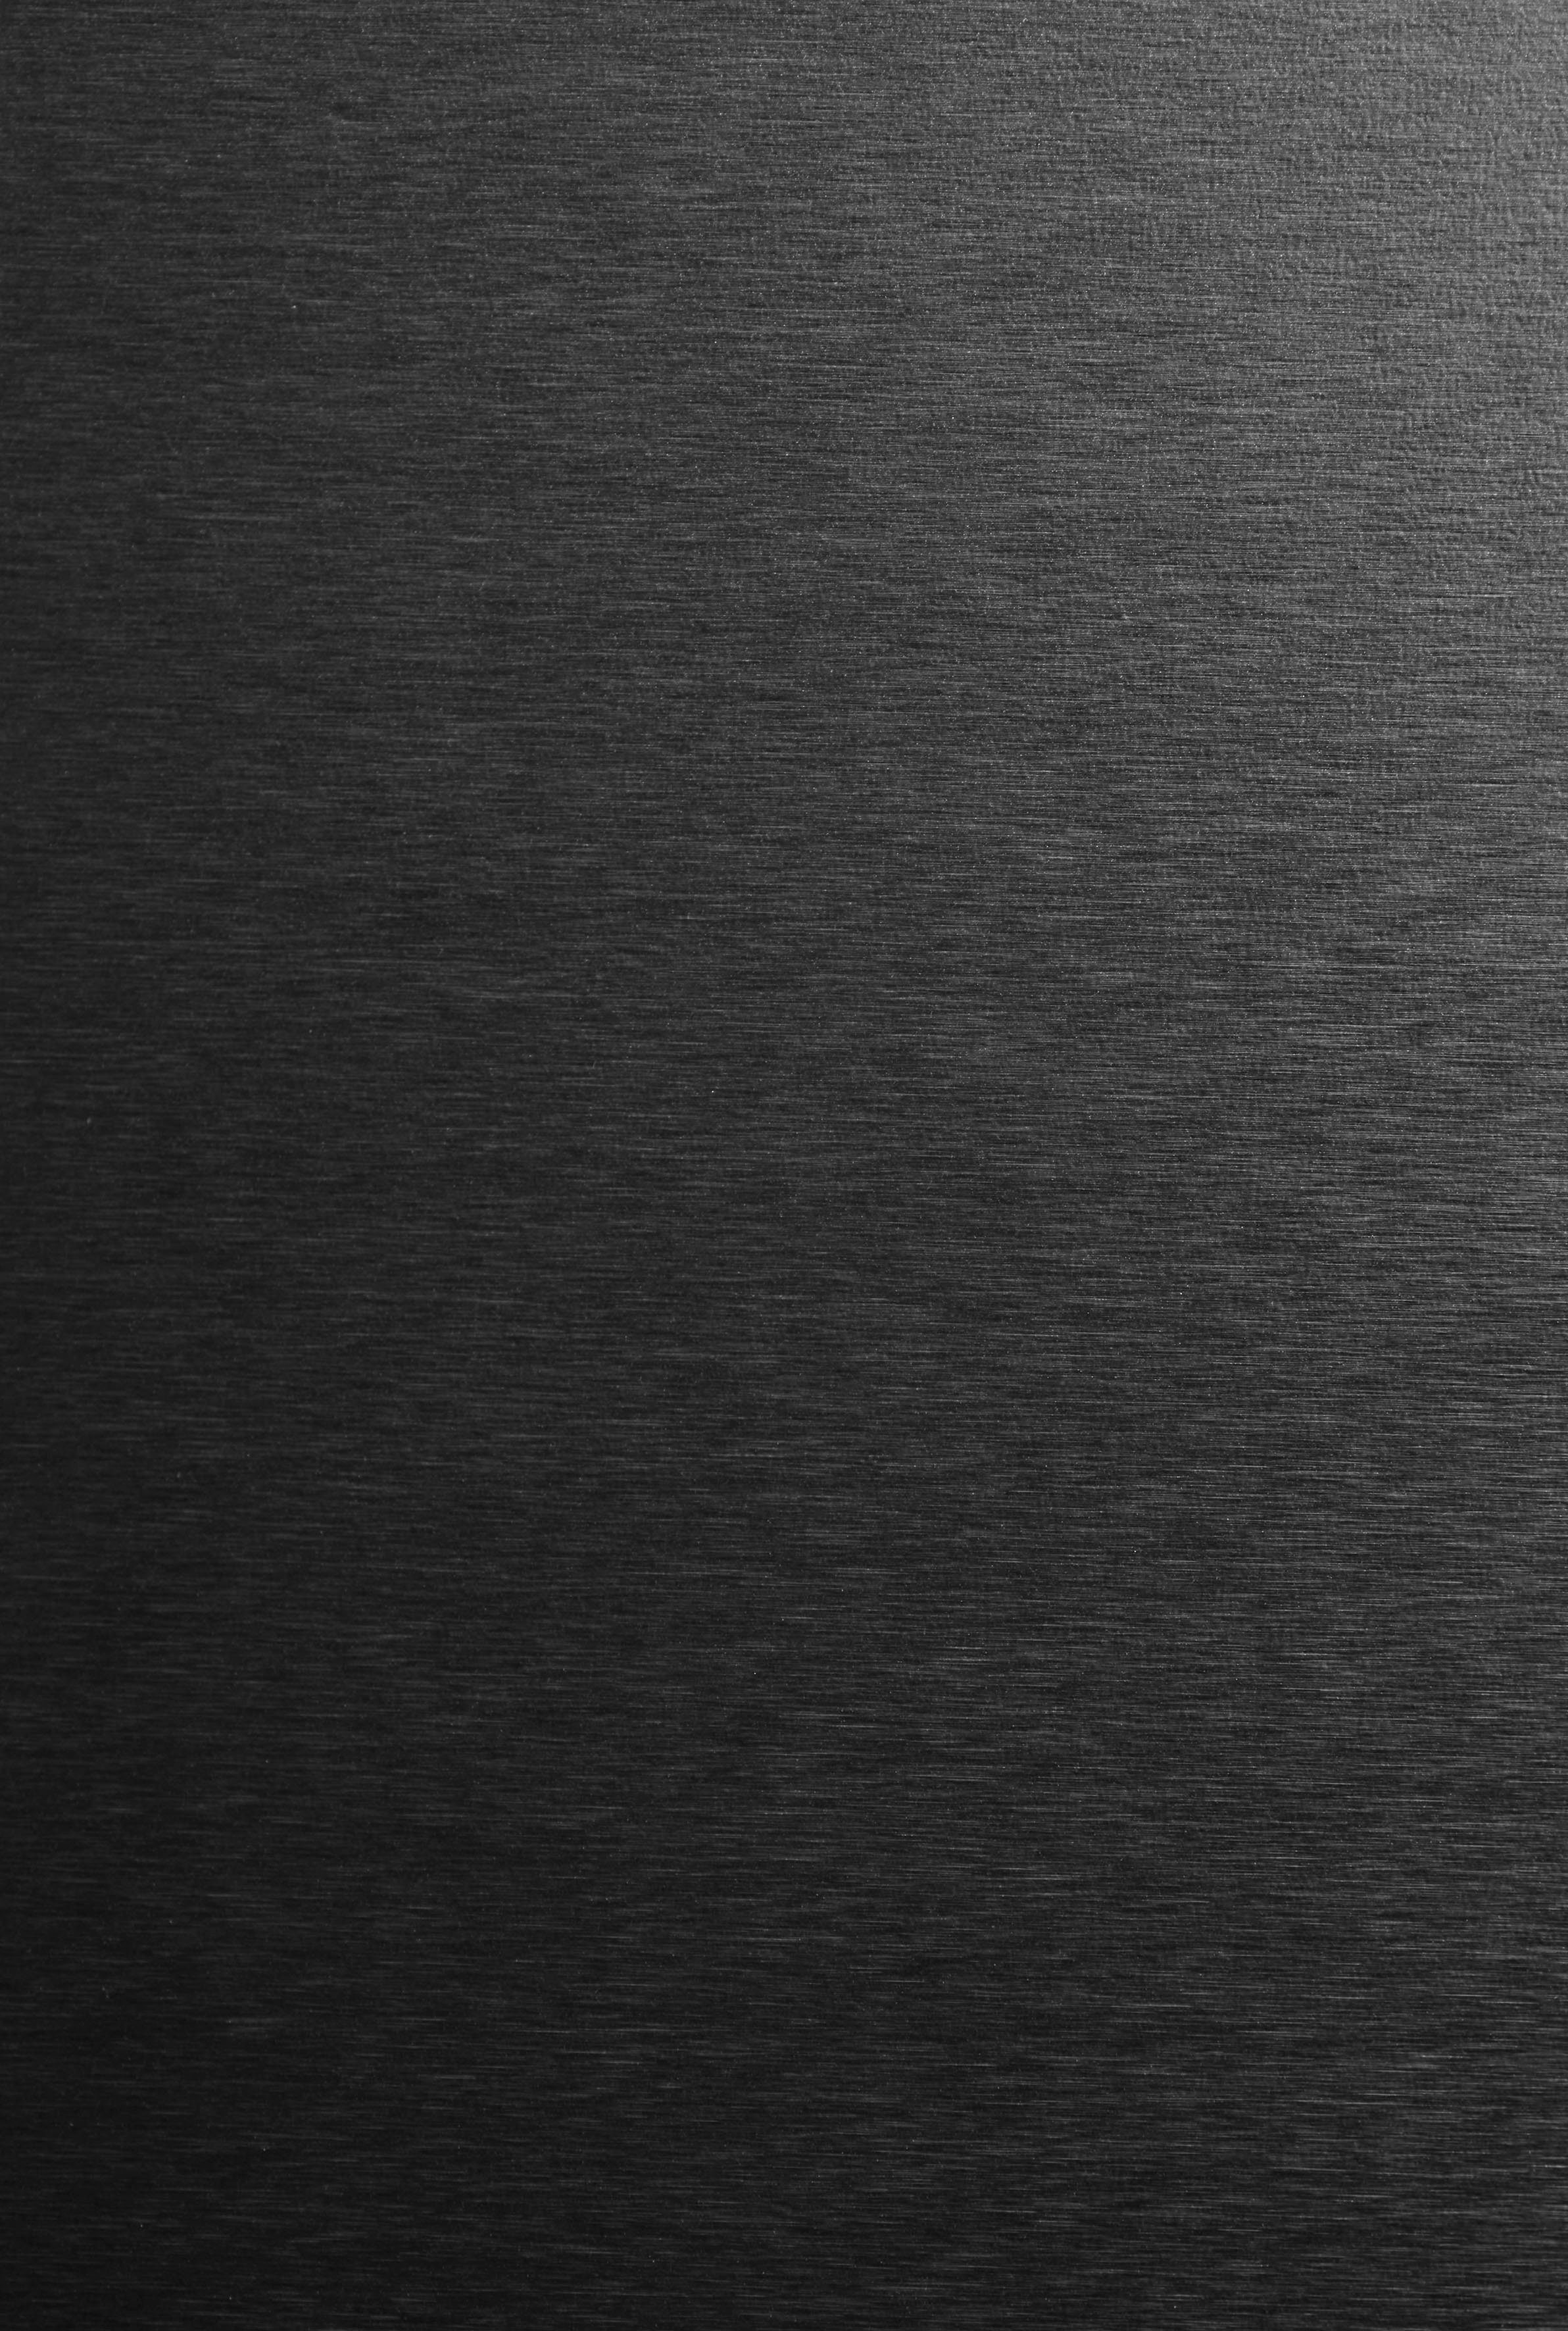 French 83,3 Hanseatic hoch, NoFrost, Door schwarz-edelstahlfarben Schnellkühl-/Gefrierfunktion, cm breit, Display, HFD18983CBI, Türalarm 189,8 cm